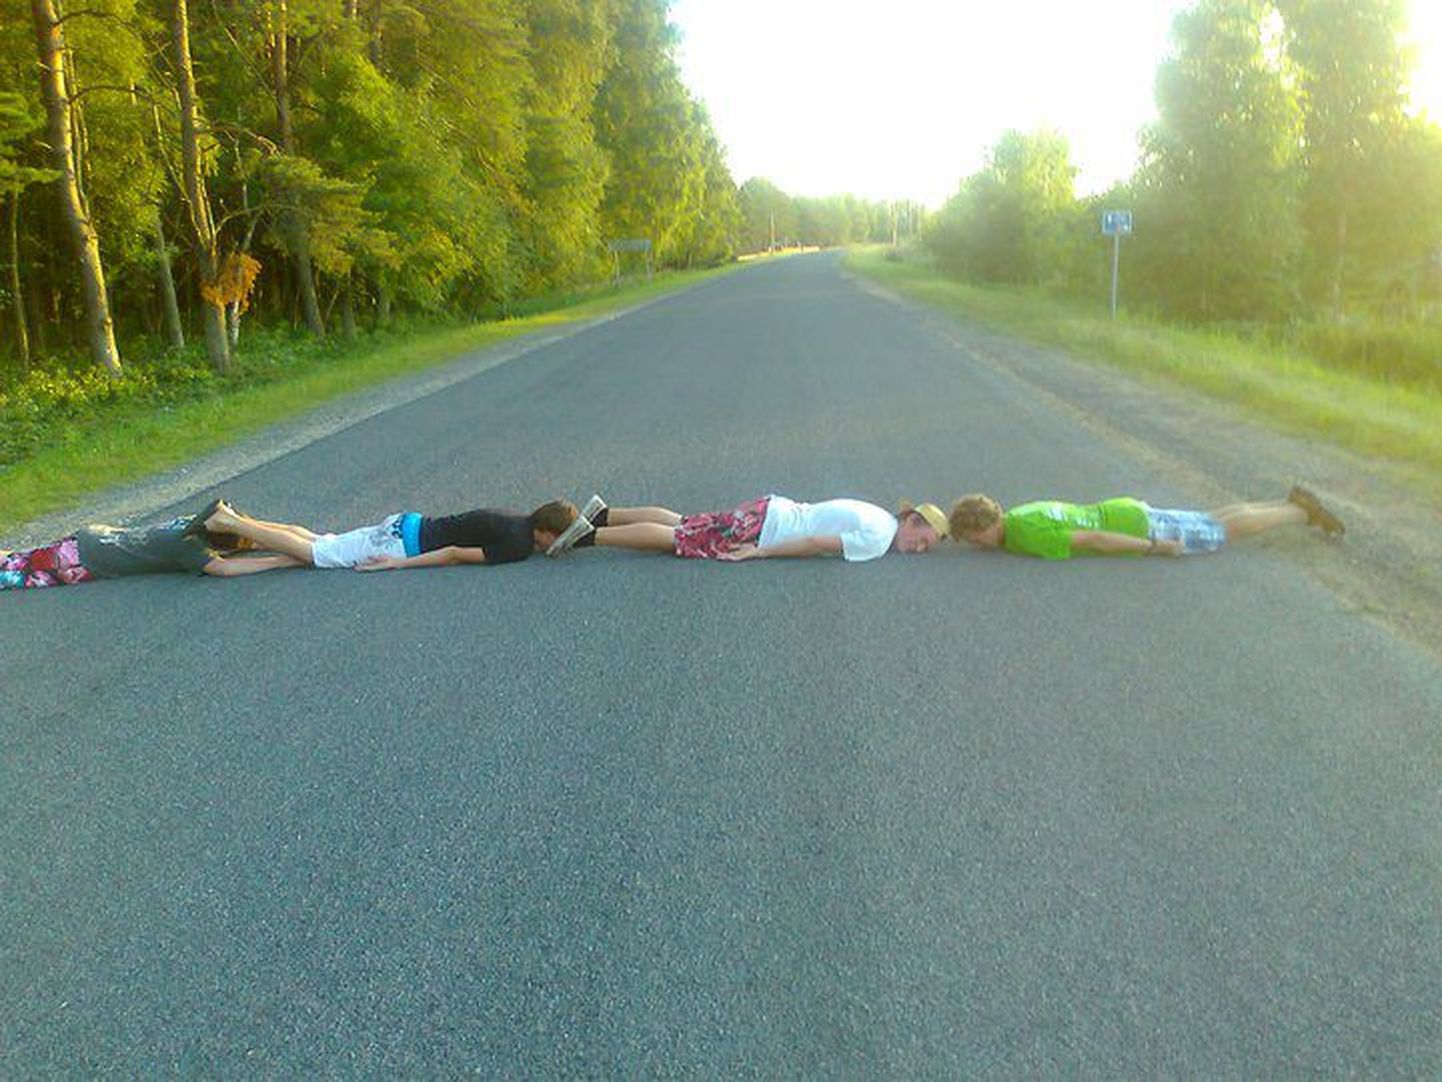 Maailmas on hakanud uue protestiviisi ja enda lõbustamisena levima planking, mis on maha heitmine, nägu maa poole, keha sirge ja käed kõrval.